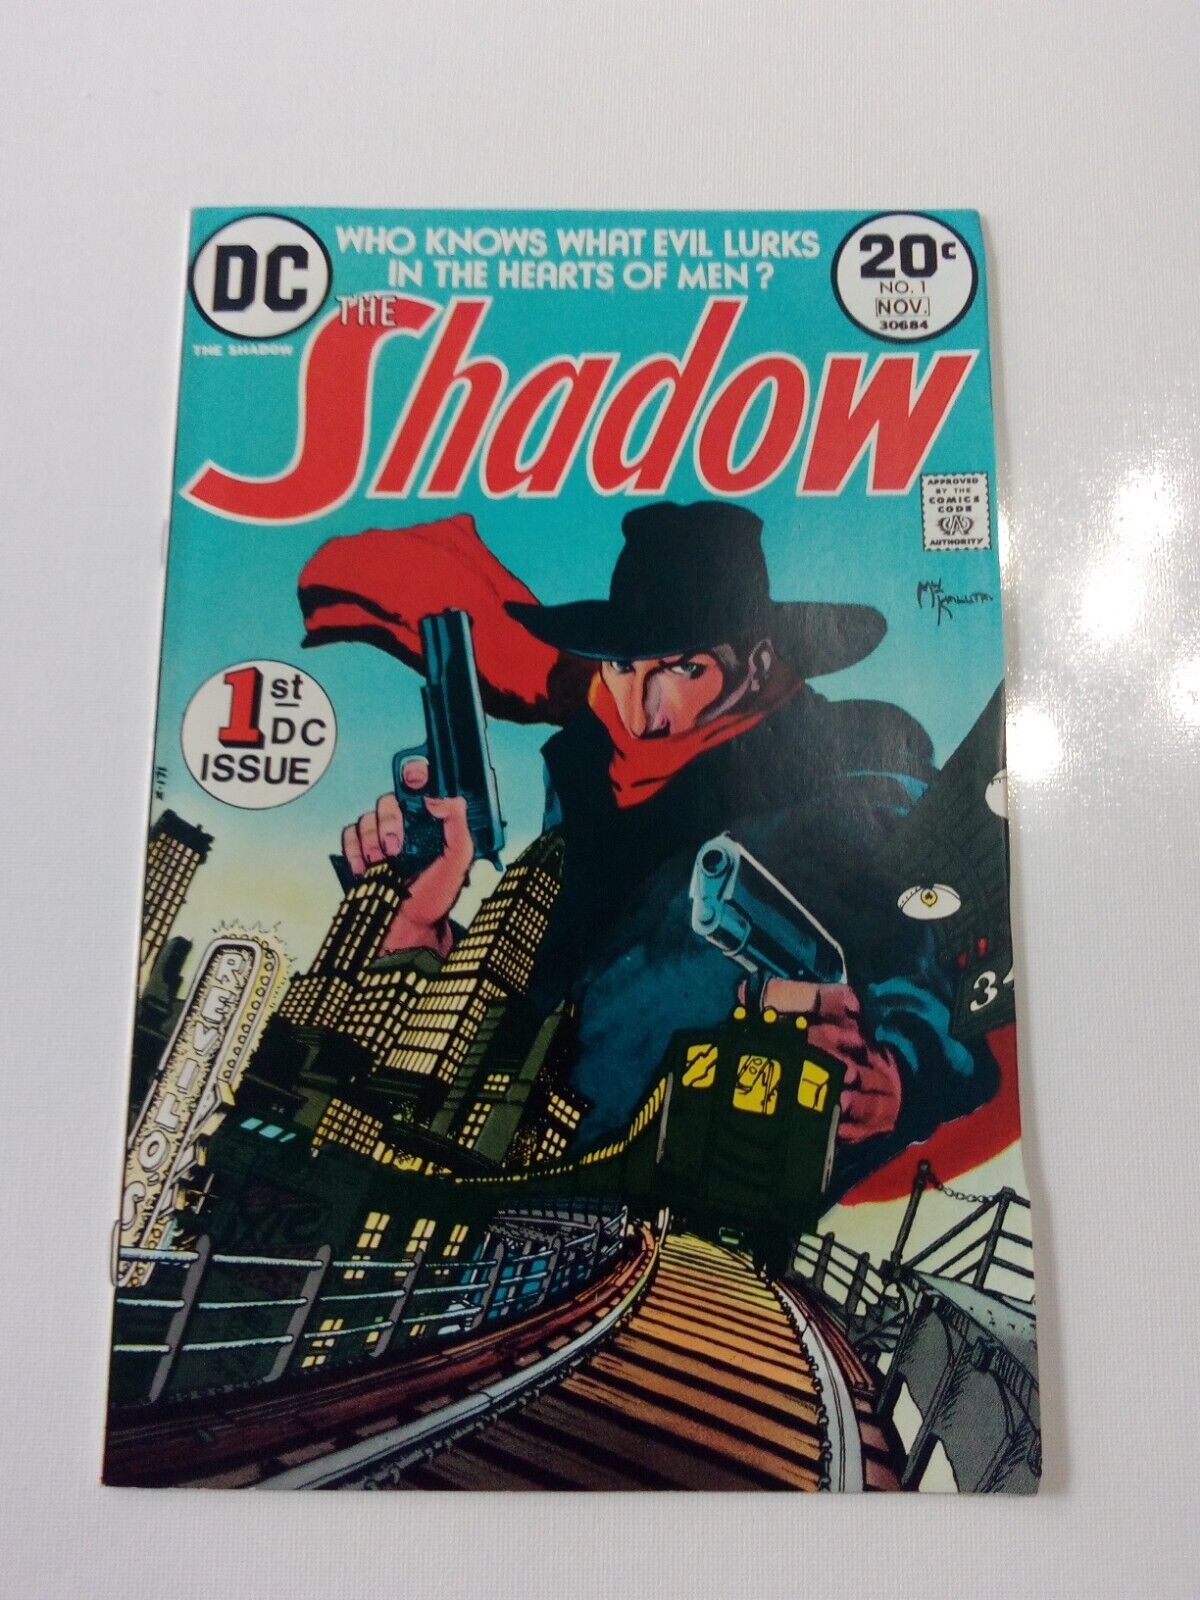 The Shadow #1 (DC Comics October-November 1973)